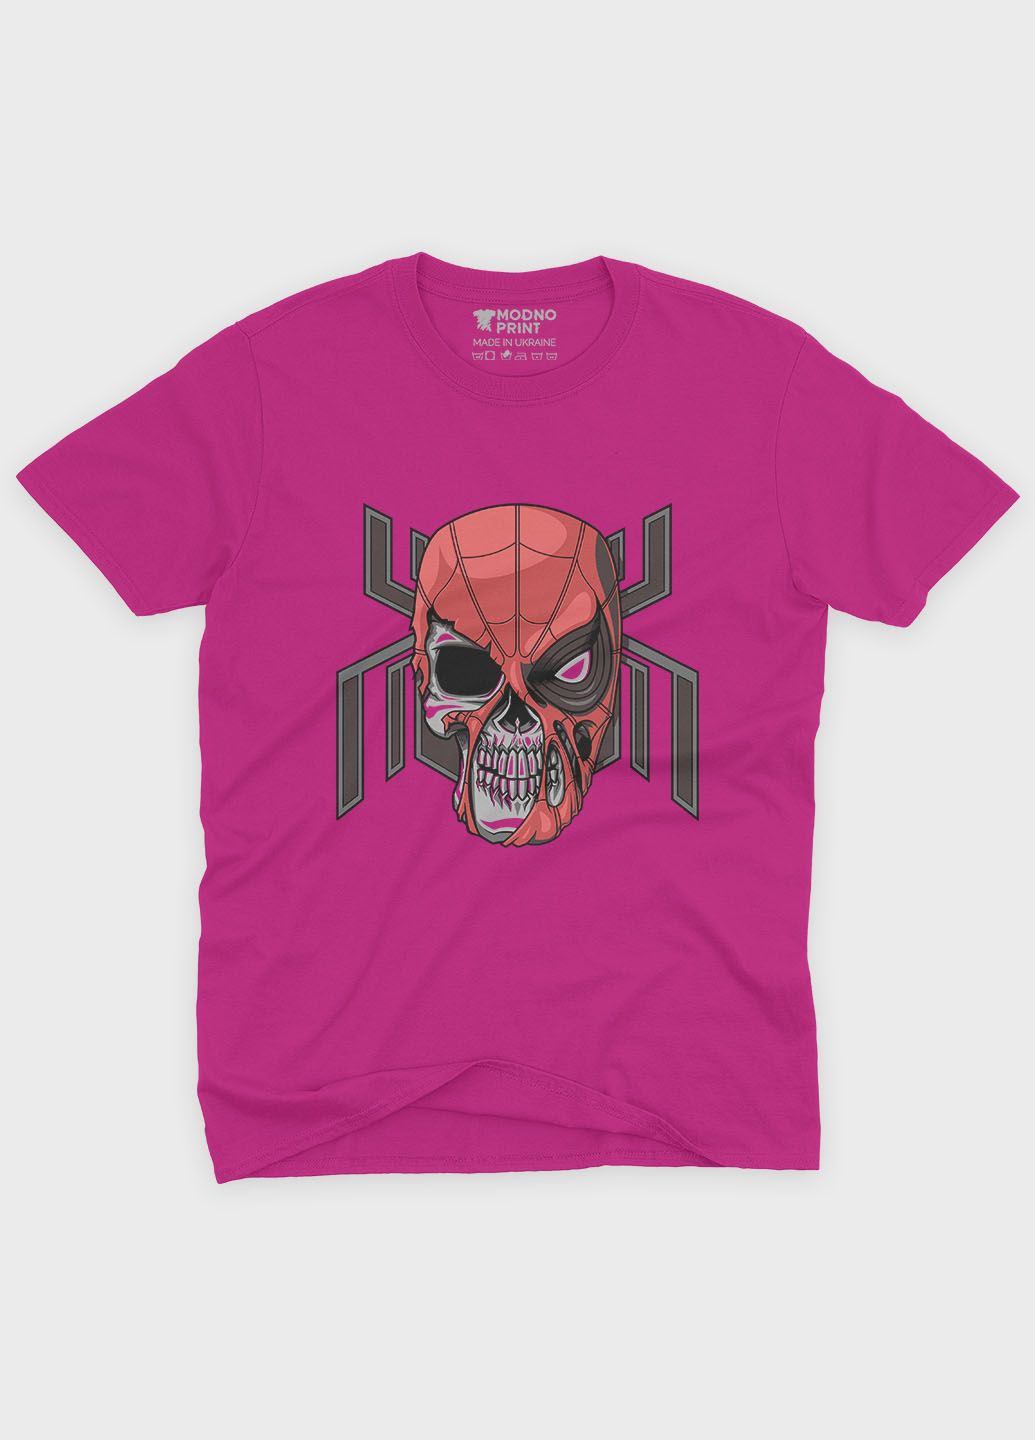 Розовая демисезонная футболка для девочки с принтом супергероя - человек-паук (ts001-1-fuxj-006-014-081-g) Modno